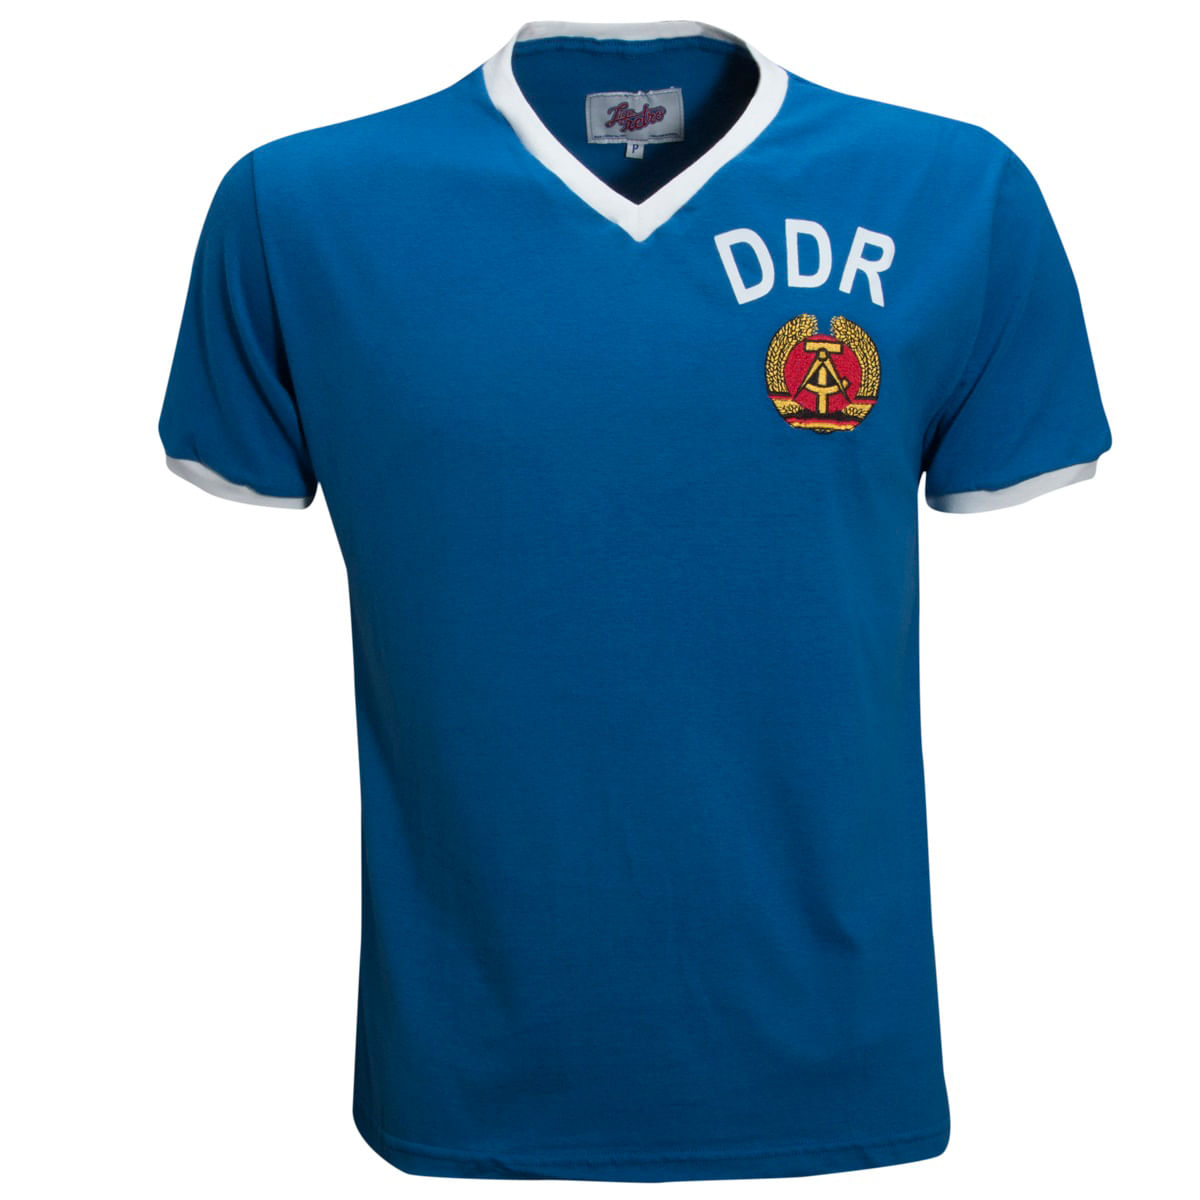 DDR 1974